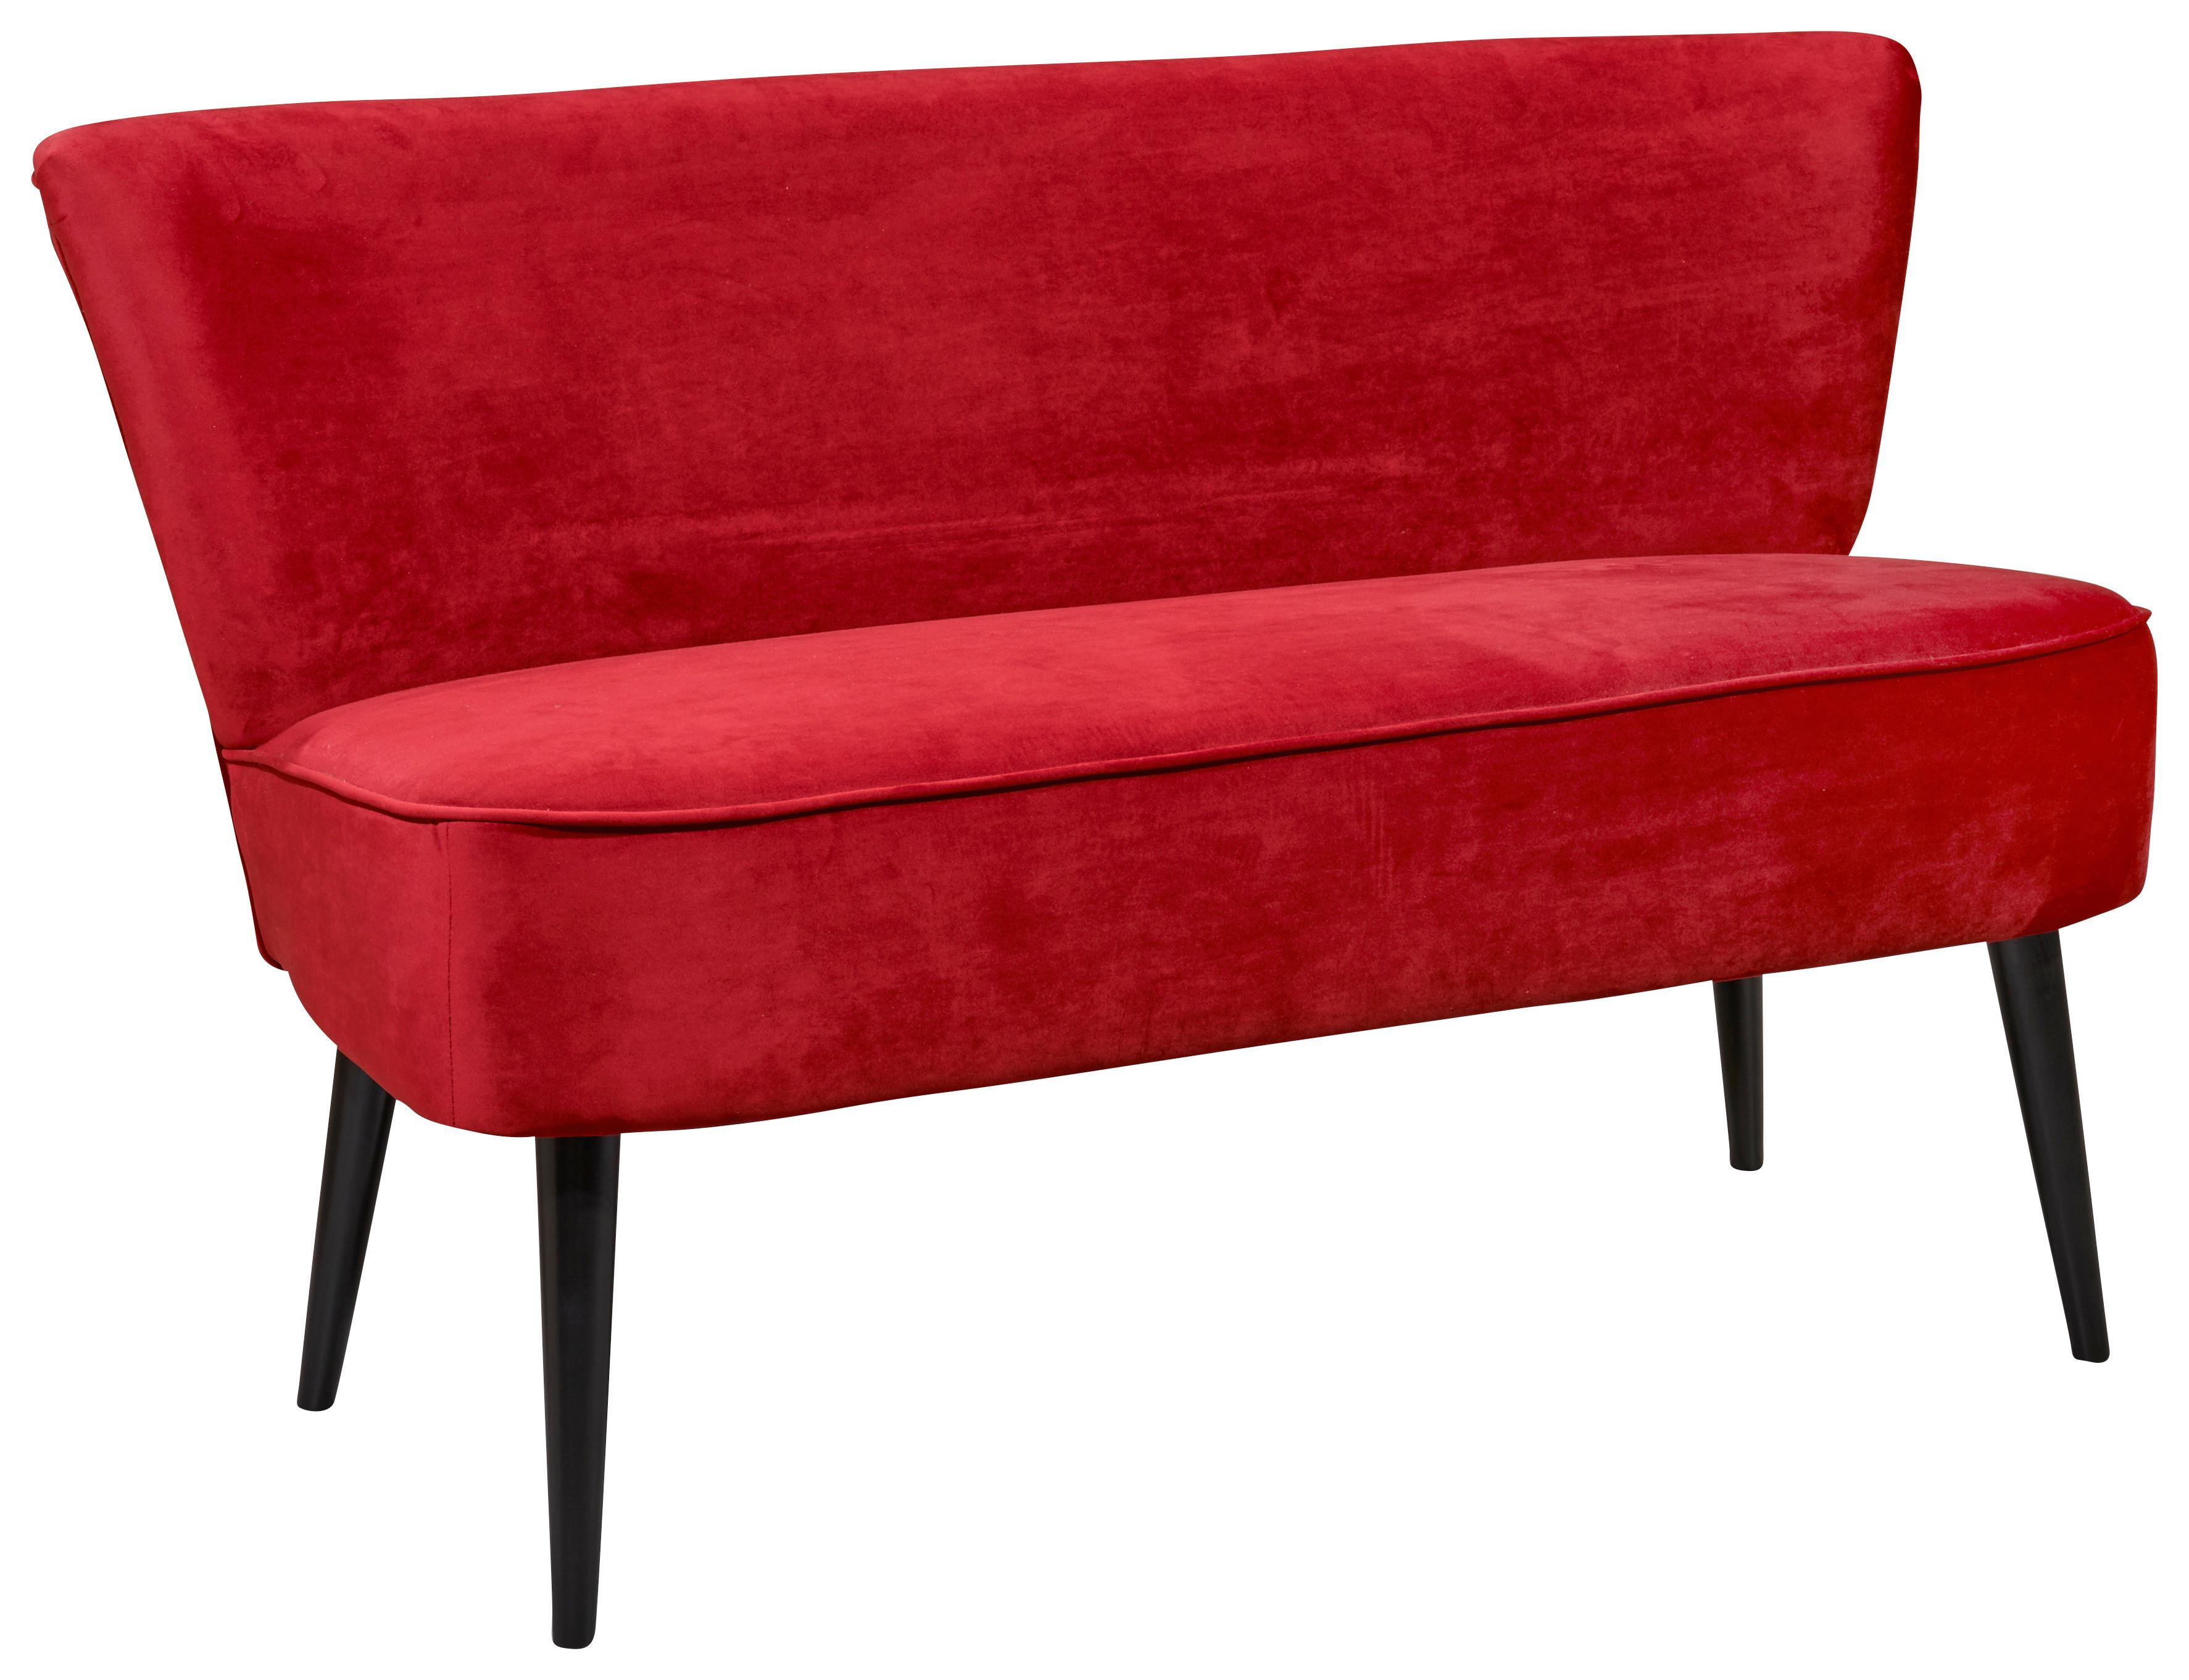 Sitzbank mit Lehne Gepolstert Samt Rot Lord B: 140 cm - Rot/Schwarz, Trend, Holzwerkstoff/Textil (140/83/75cm) - MID.YOU